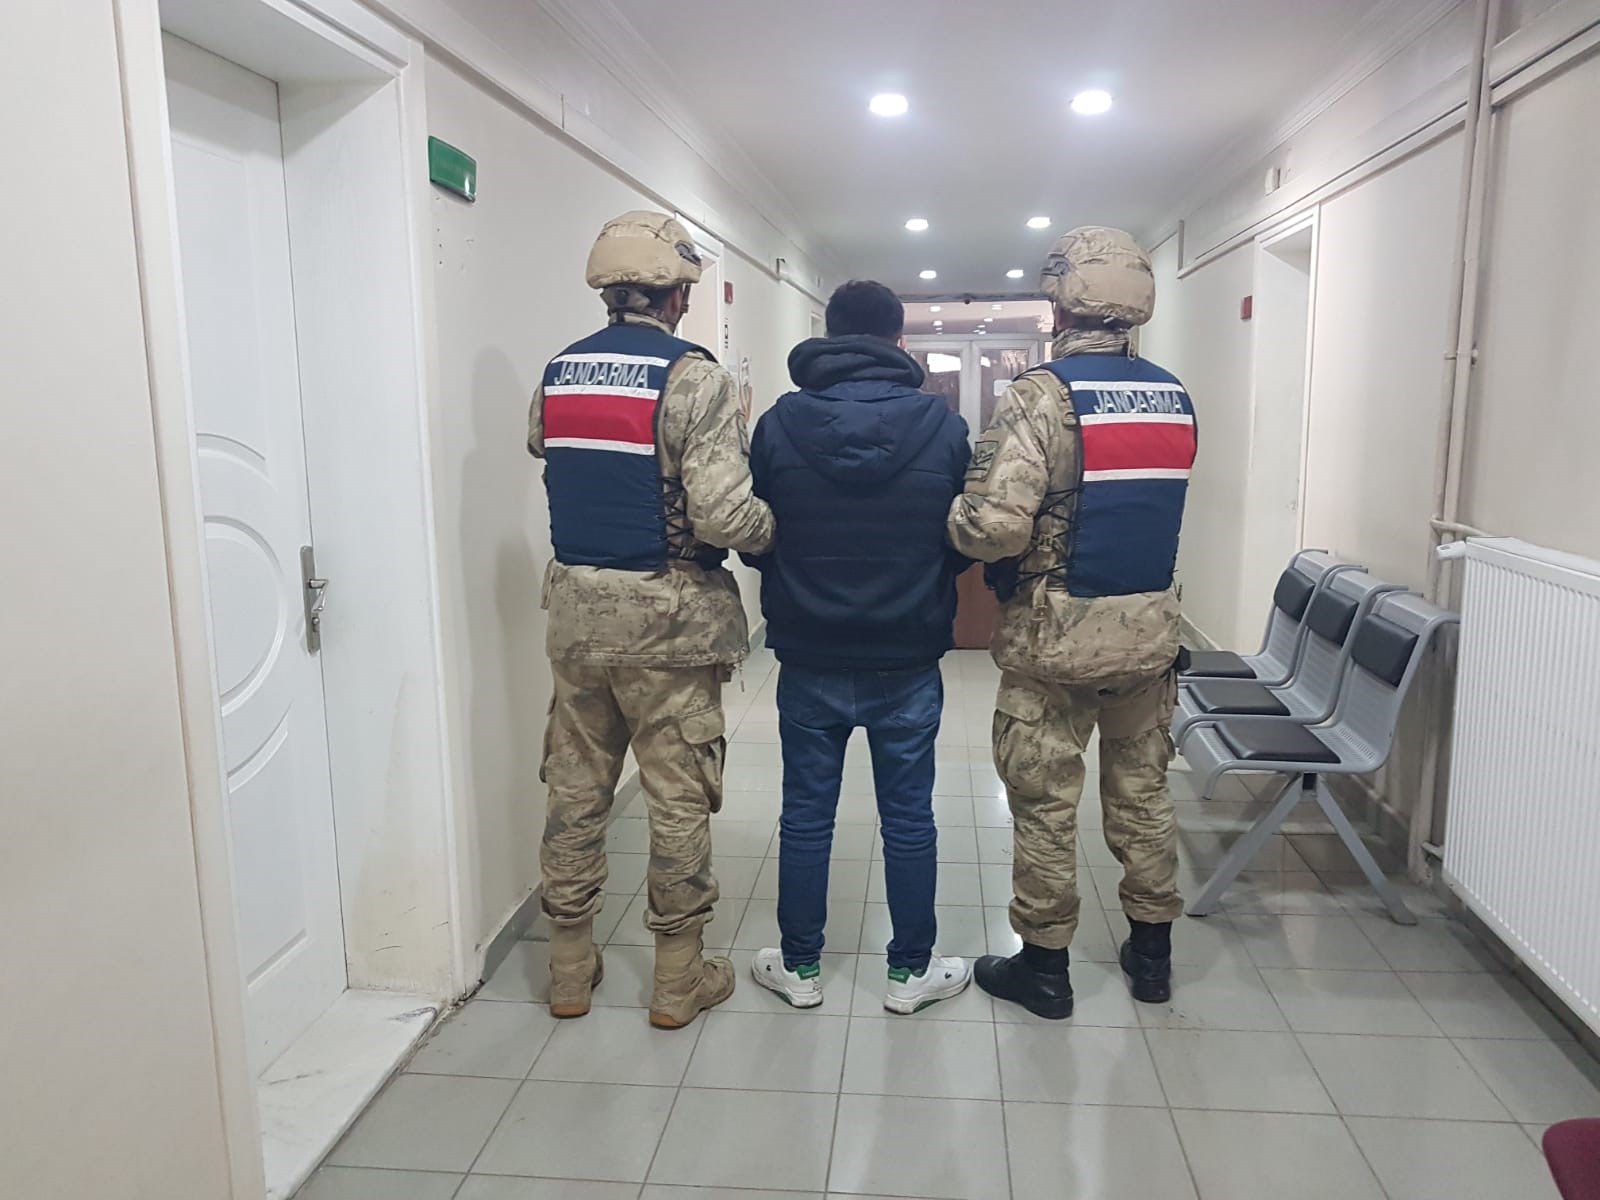 Bingöl'de hapis cezası bulunan şahıs yakalandı